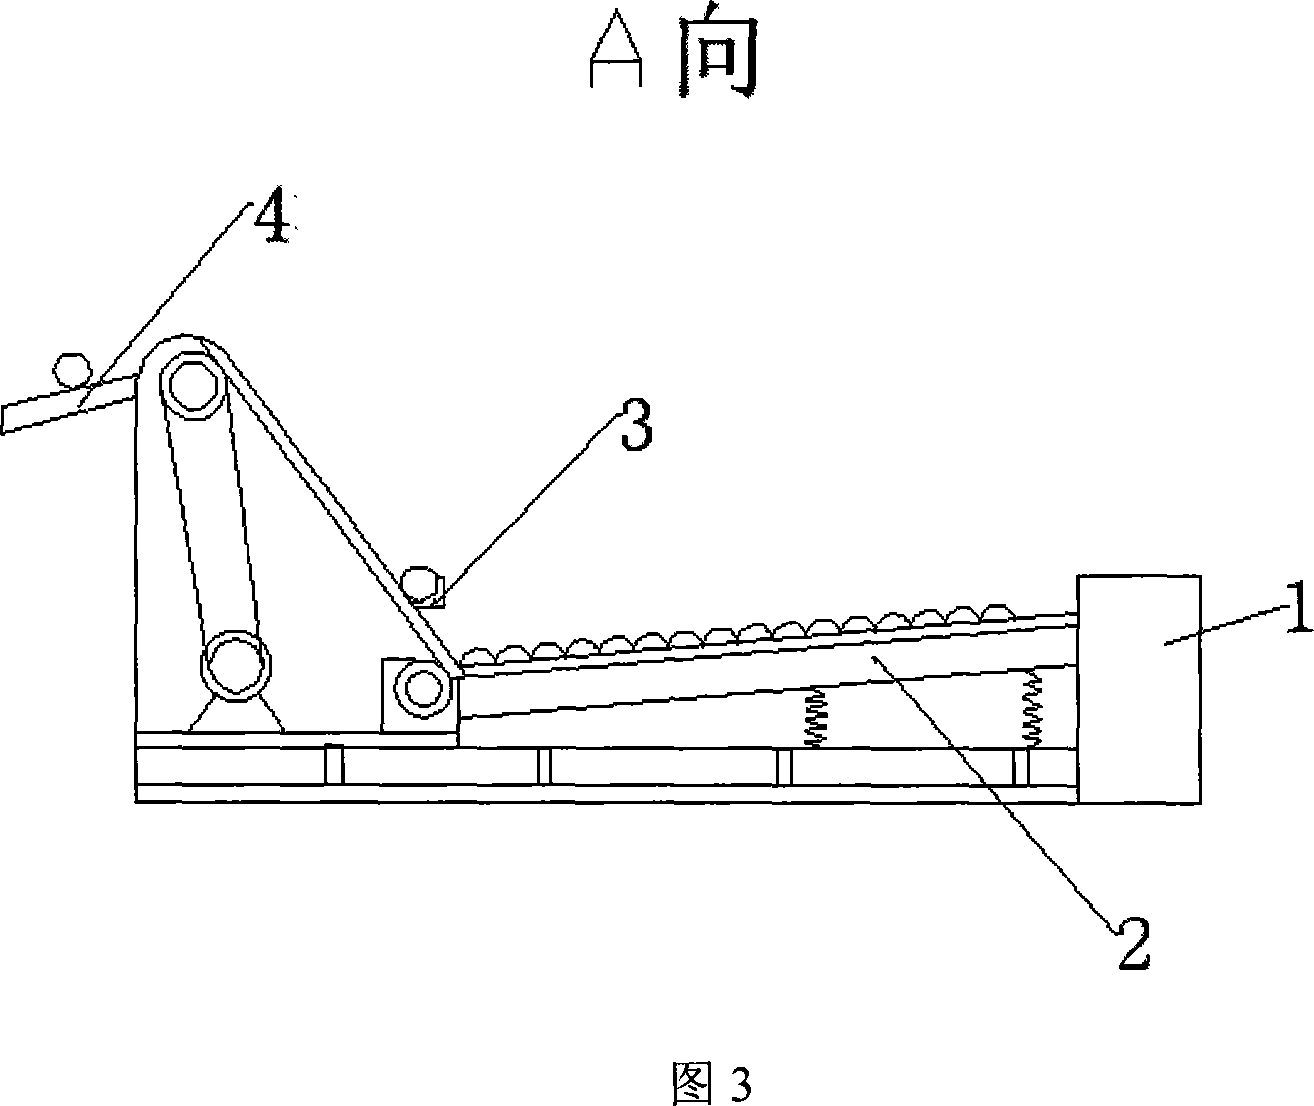 Process for heating titanium oblique perforating rod ingot